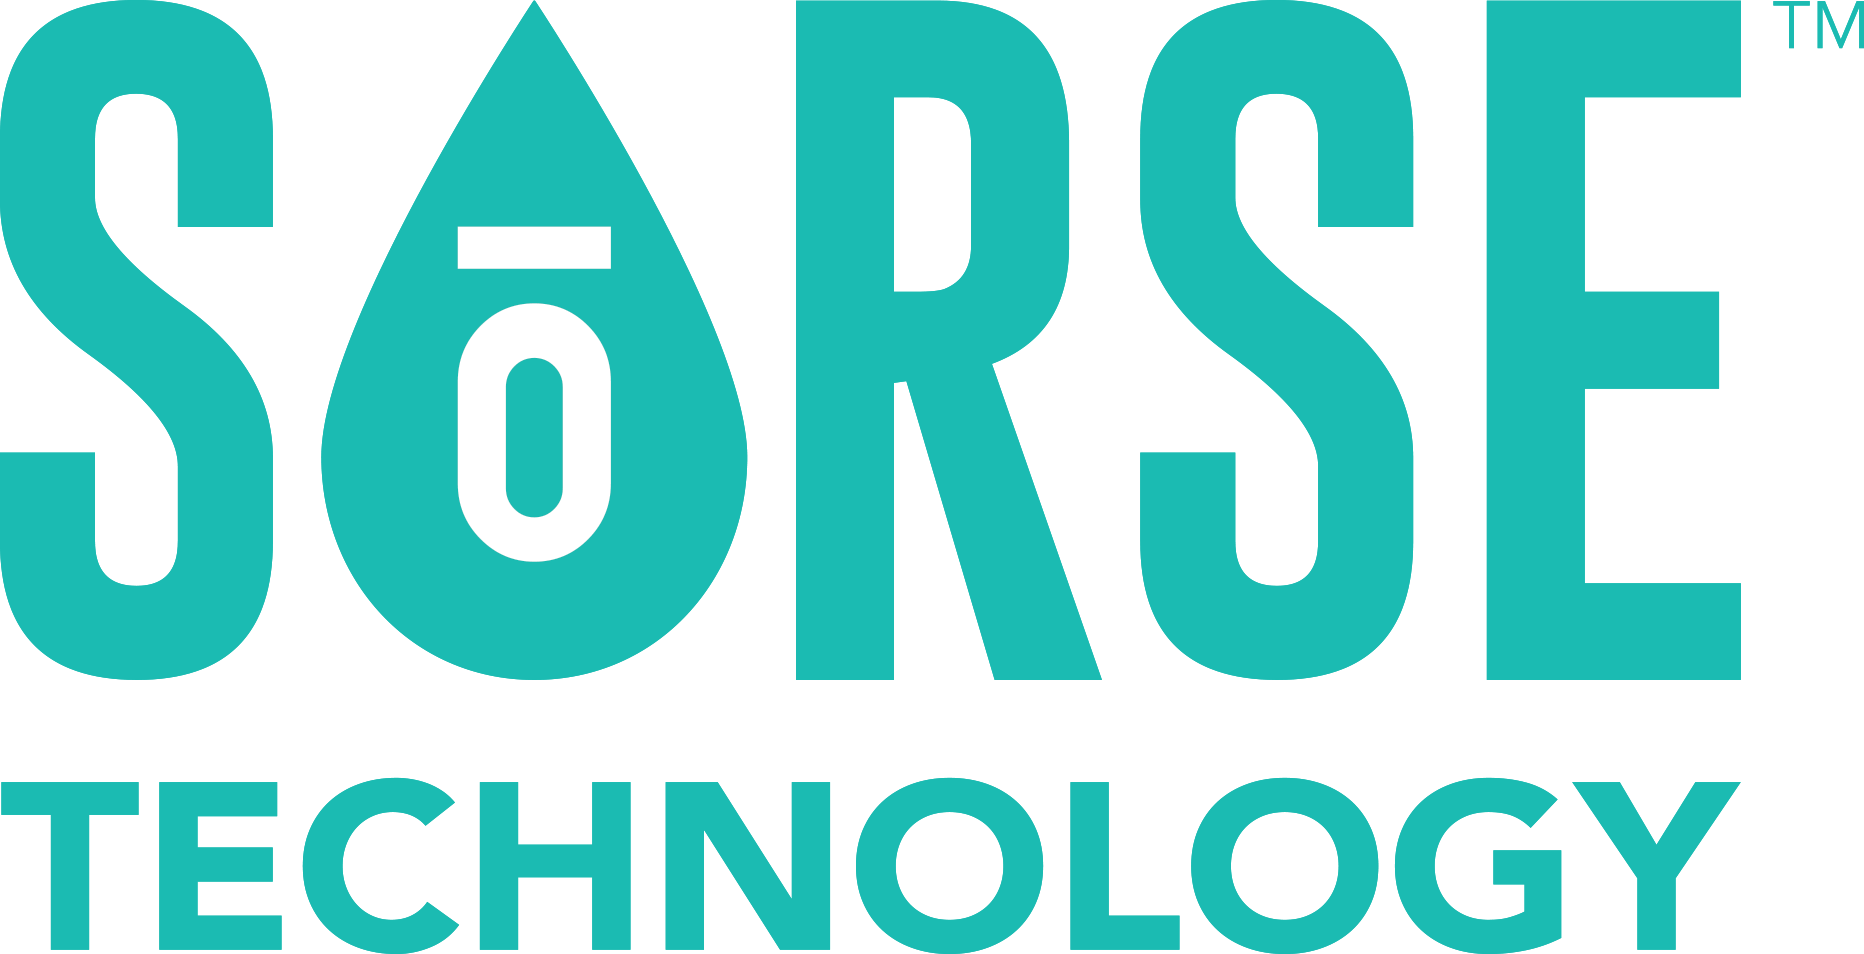 So RSE Technology logo 1